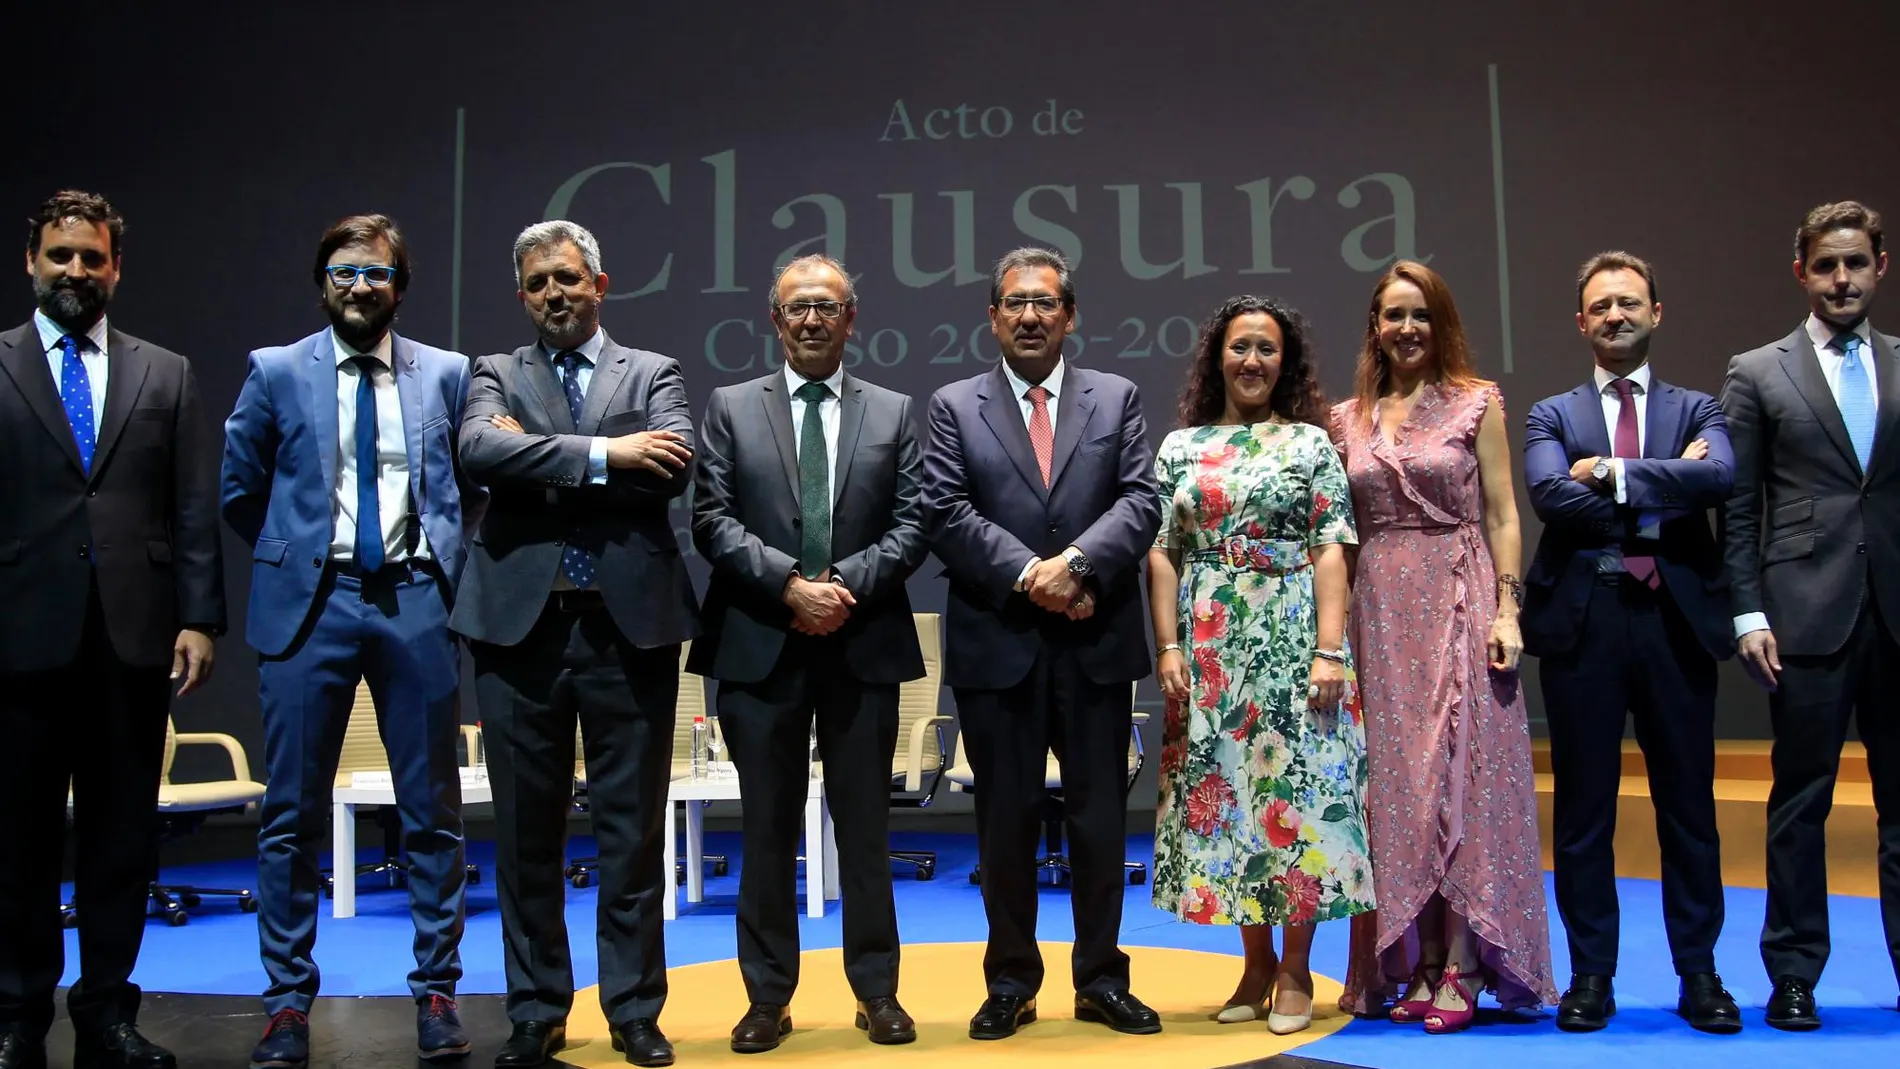 Acto de graduación del curso académico 2018/19 del Instituto de Estudios Cajasol / Foto: Manuel Olmedo